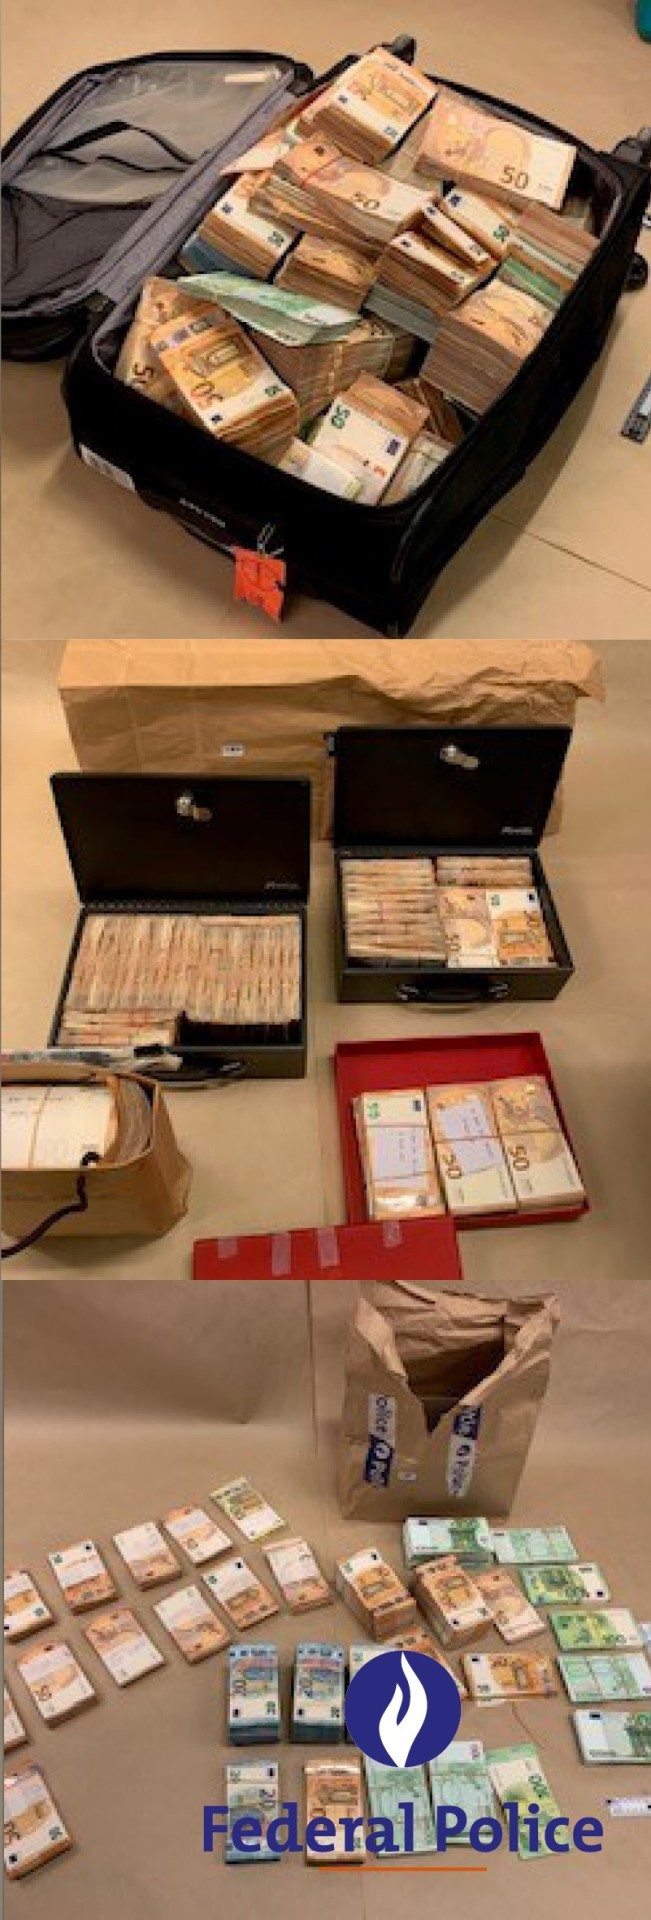 Τα χρήματα που βρέθηκαν μετά από την έρευνα των βελγικών αρχών για το Qatargate